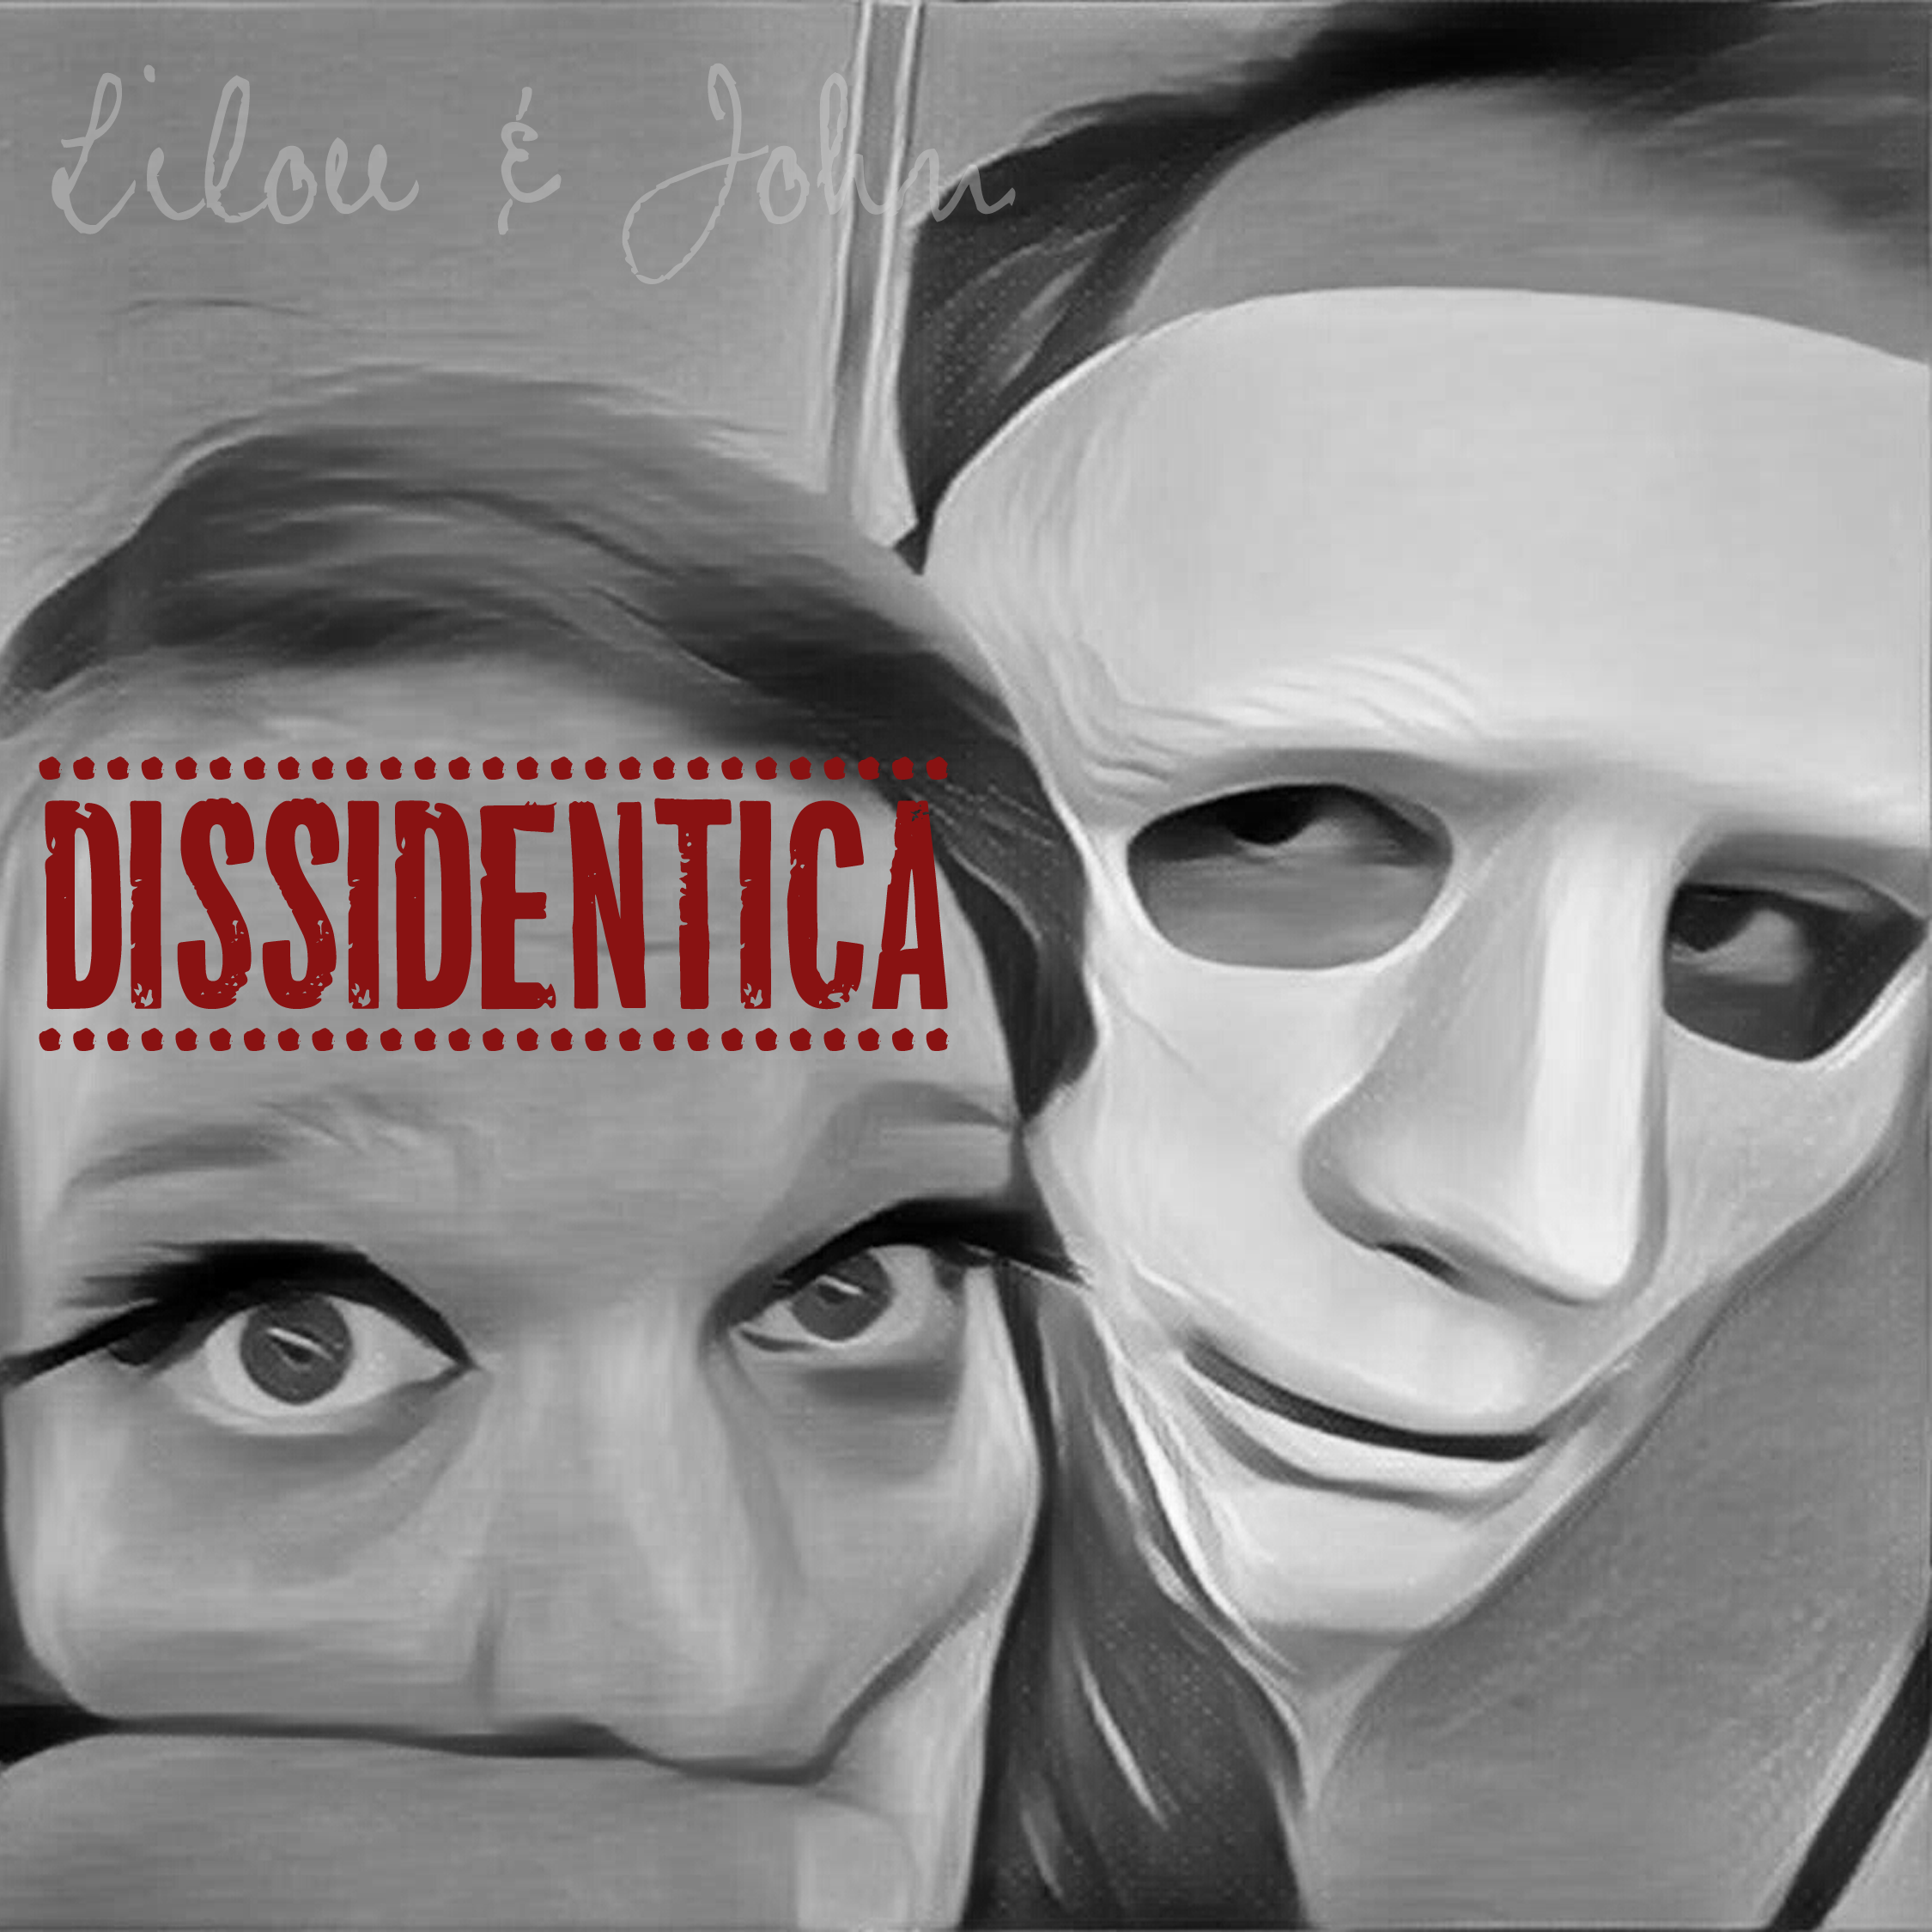 Dissidentica